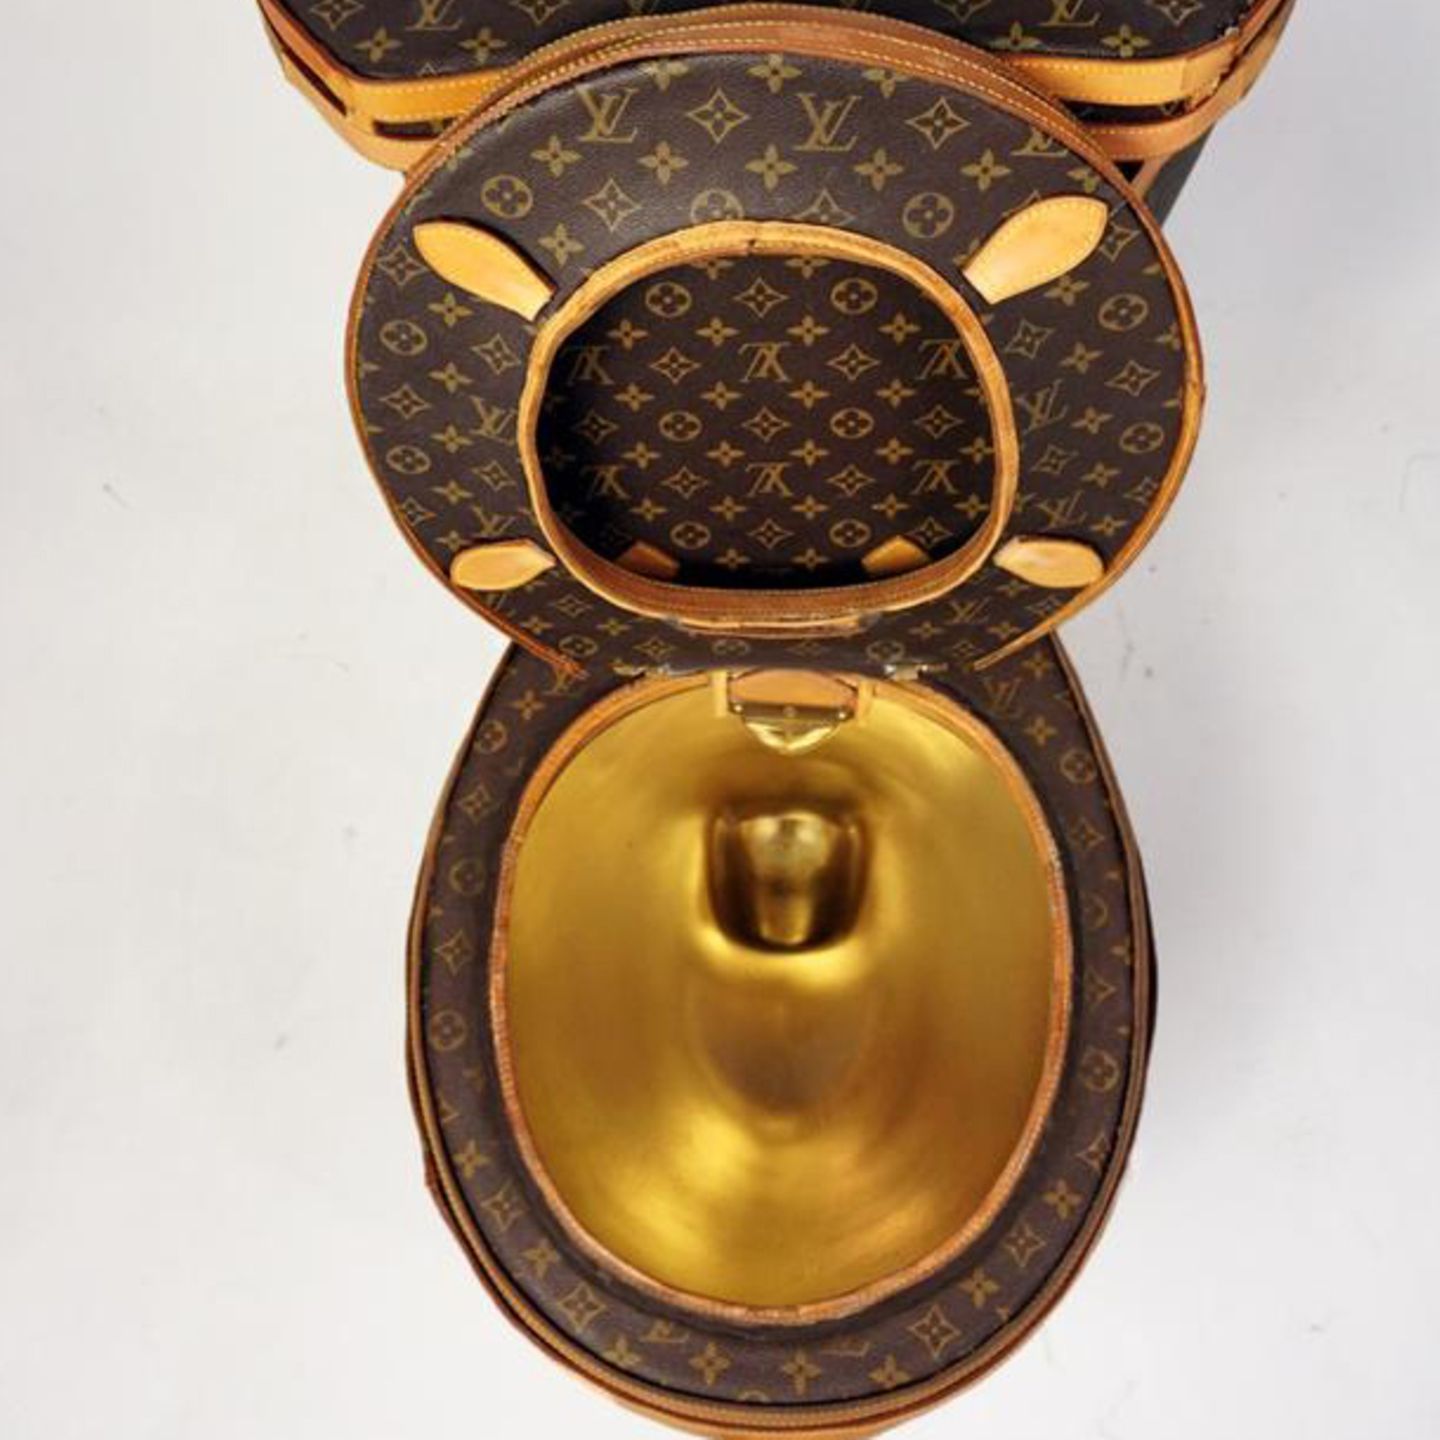 Für 100.000 Dollar gehört diese Louis-Vuitton-Toilette Ihnen